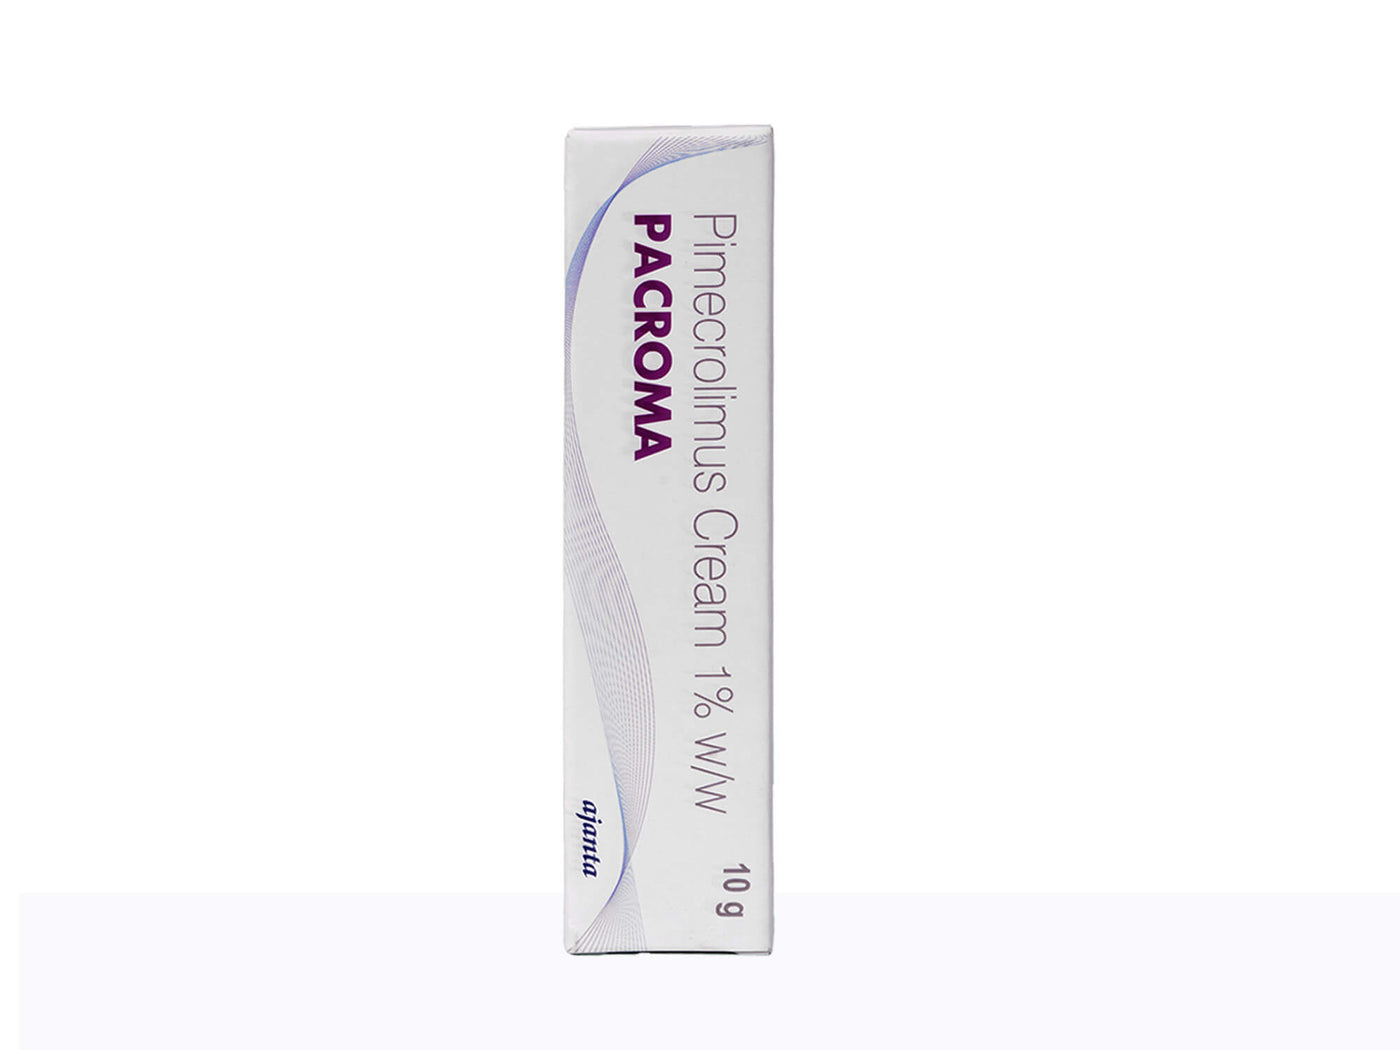 Pacroma 1% Cream - Clinikally